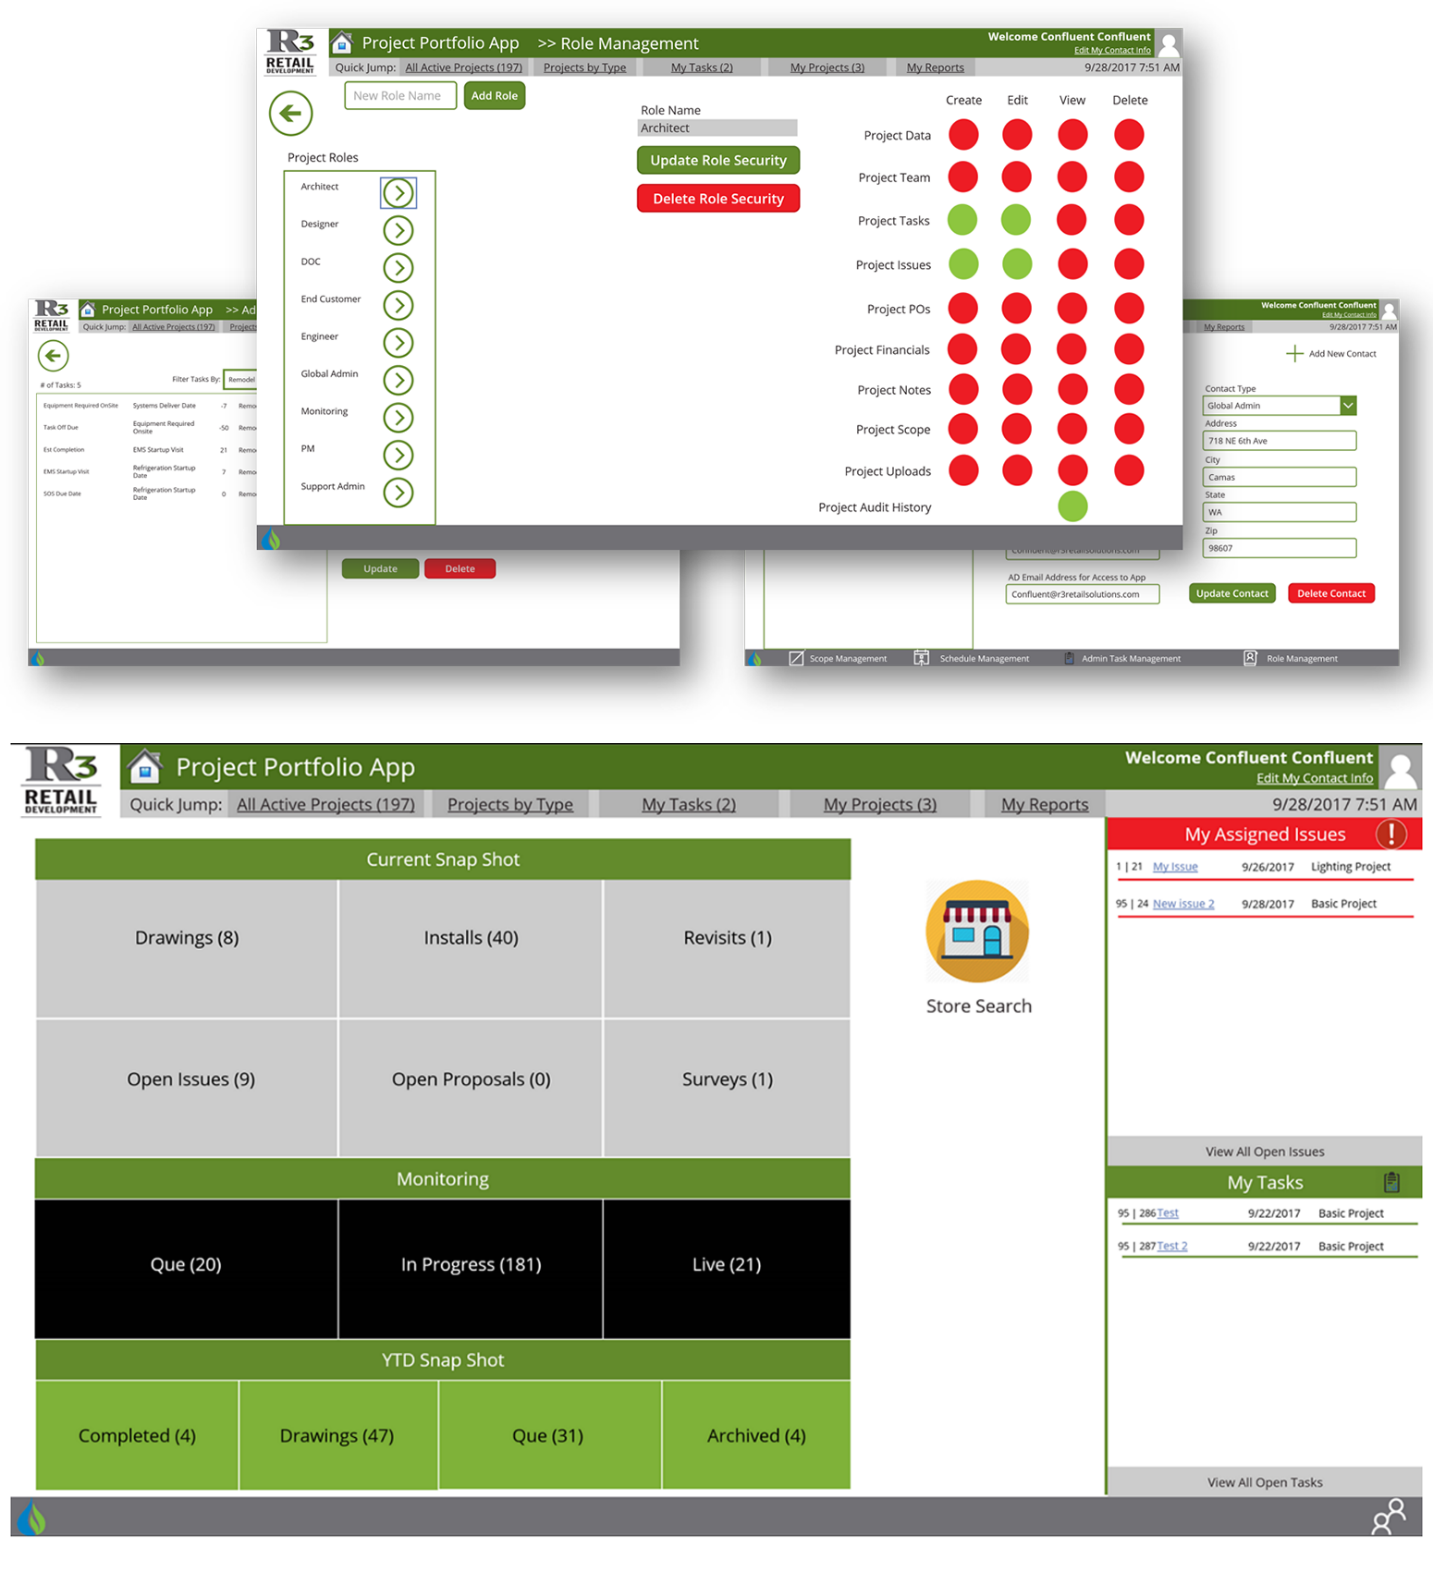 Screenshot des R3 Rollenmanagement-Bildschirms und des Key Stats Dashboard